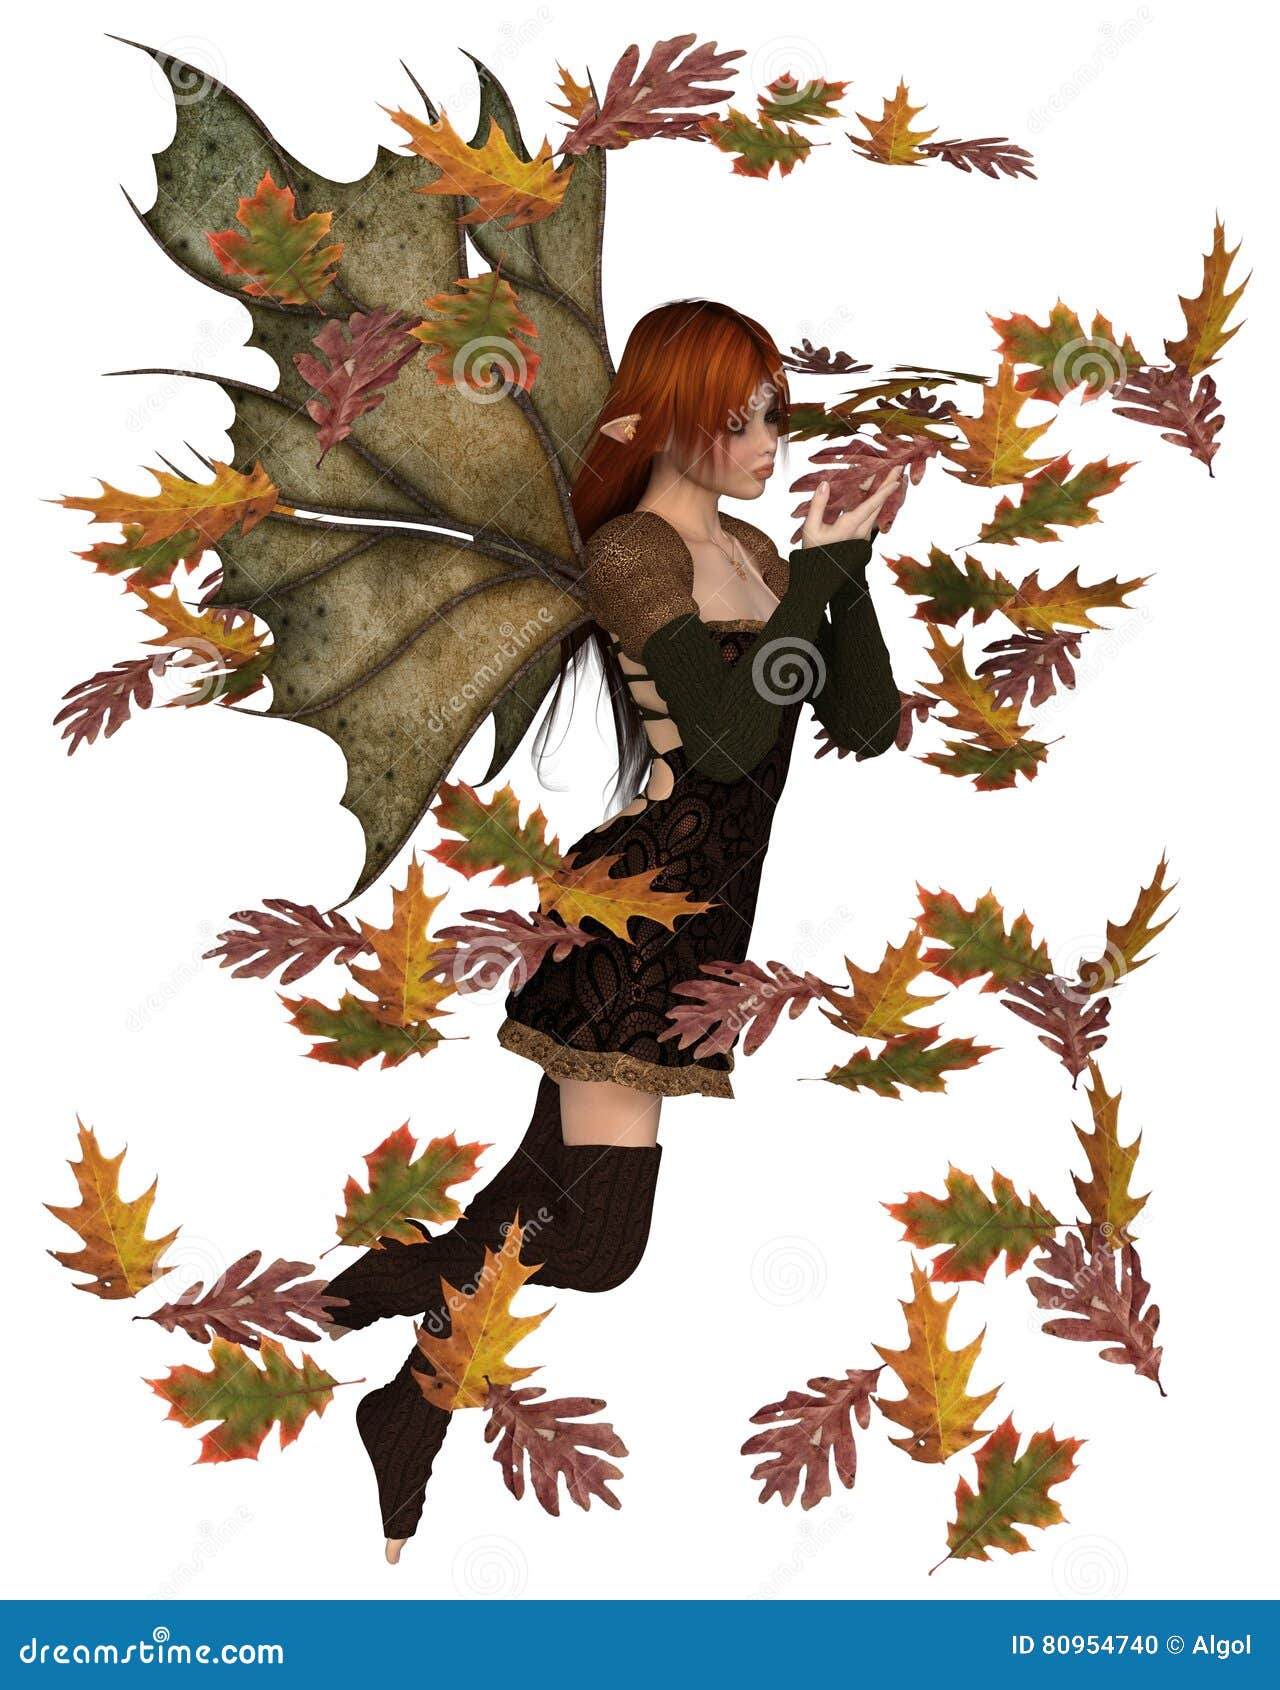 Autumn Fairy com folhas de roda. A ilustração da fantasia de uma fada do outono vestiu-se no marrom com cabelo vermelho e as asas da folha, jogando com as folhas de roda dispersadas, 3d renderam digitalmente a ilustração